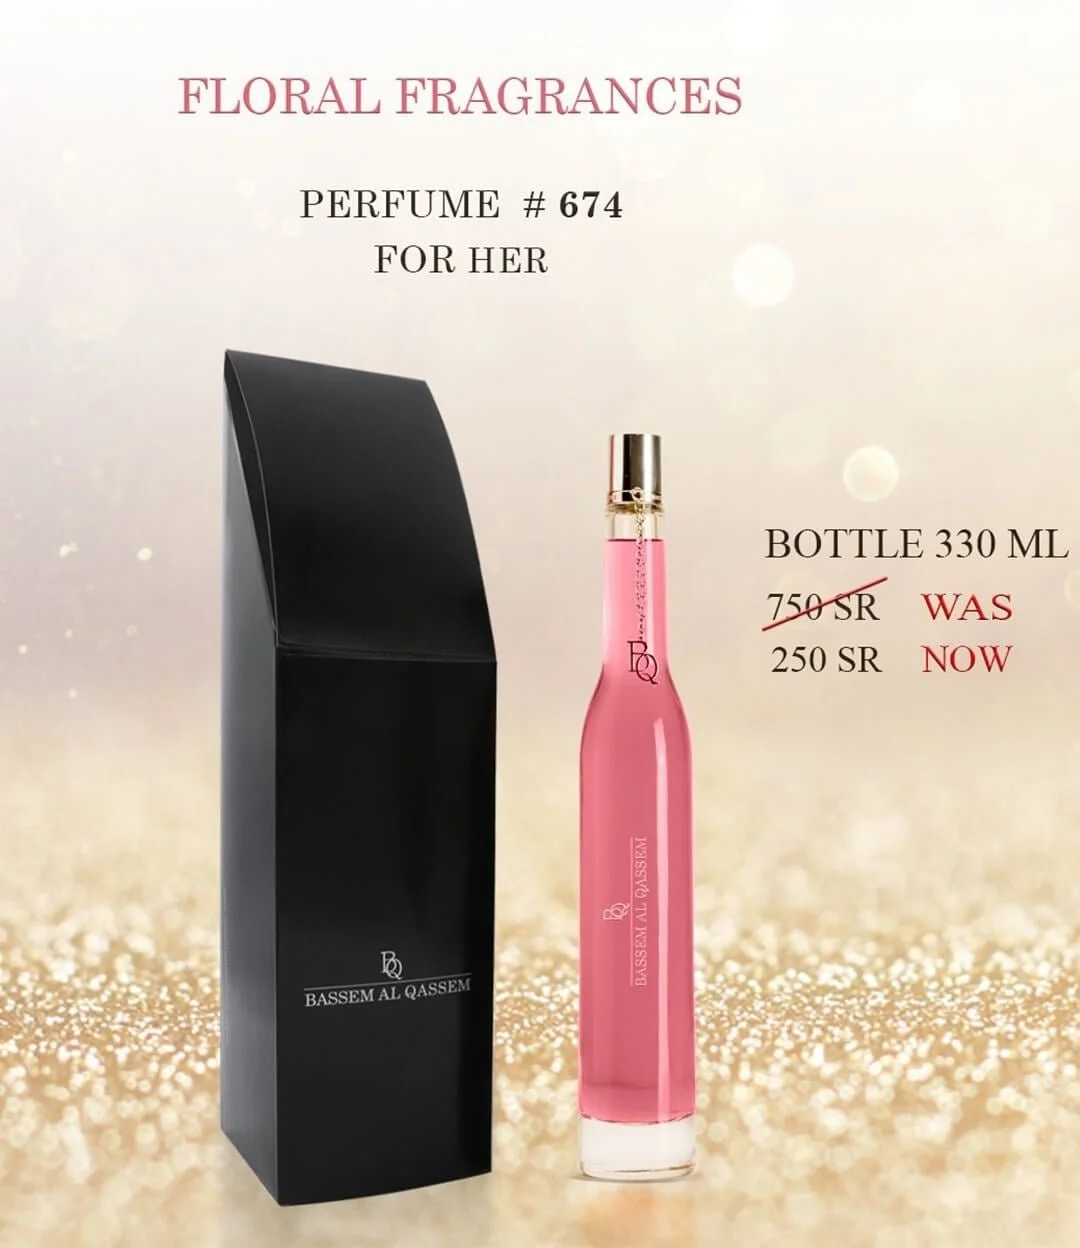 Perfume #674 Floral Fragrance for Her by Bassem Al Qassem 